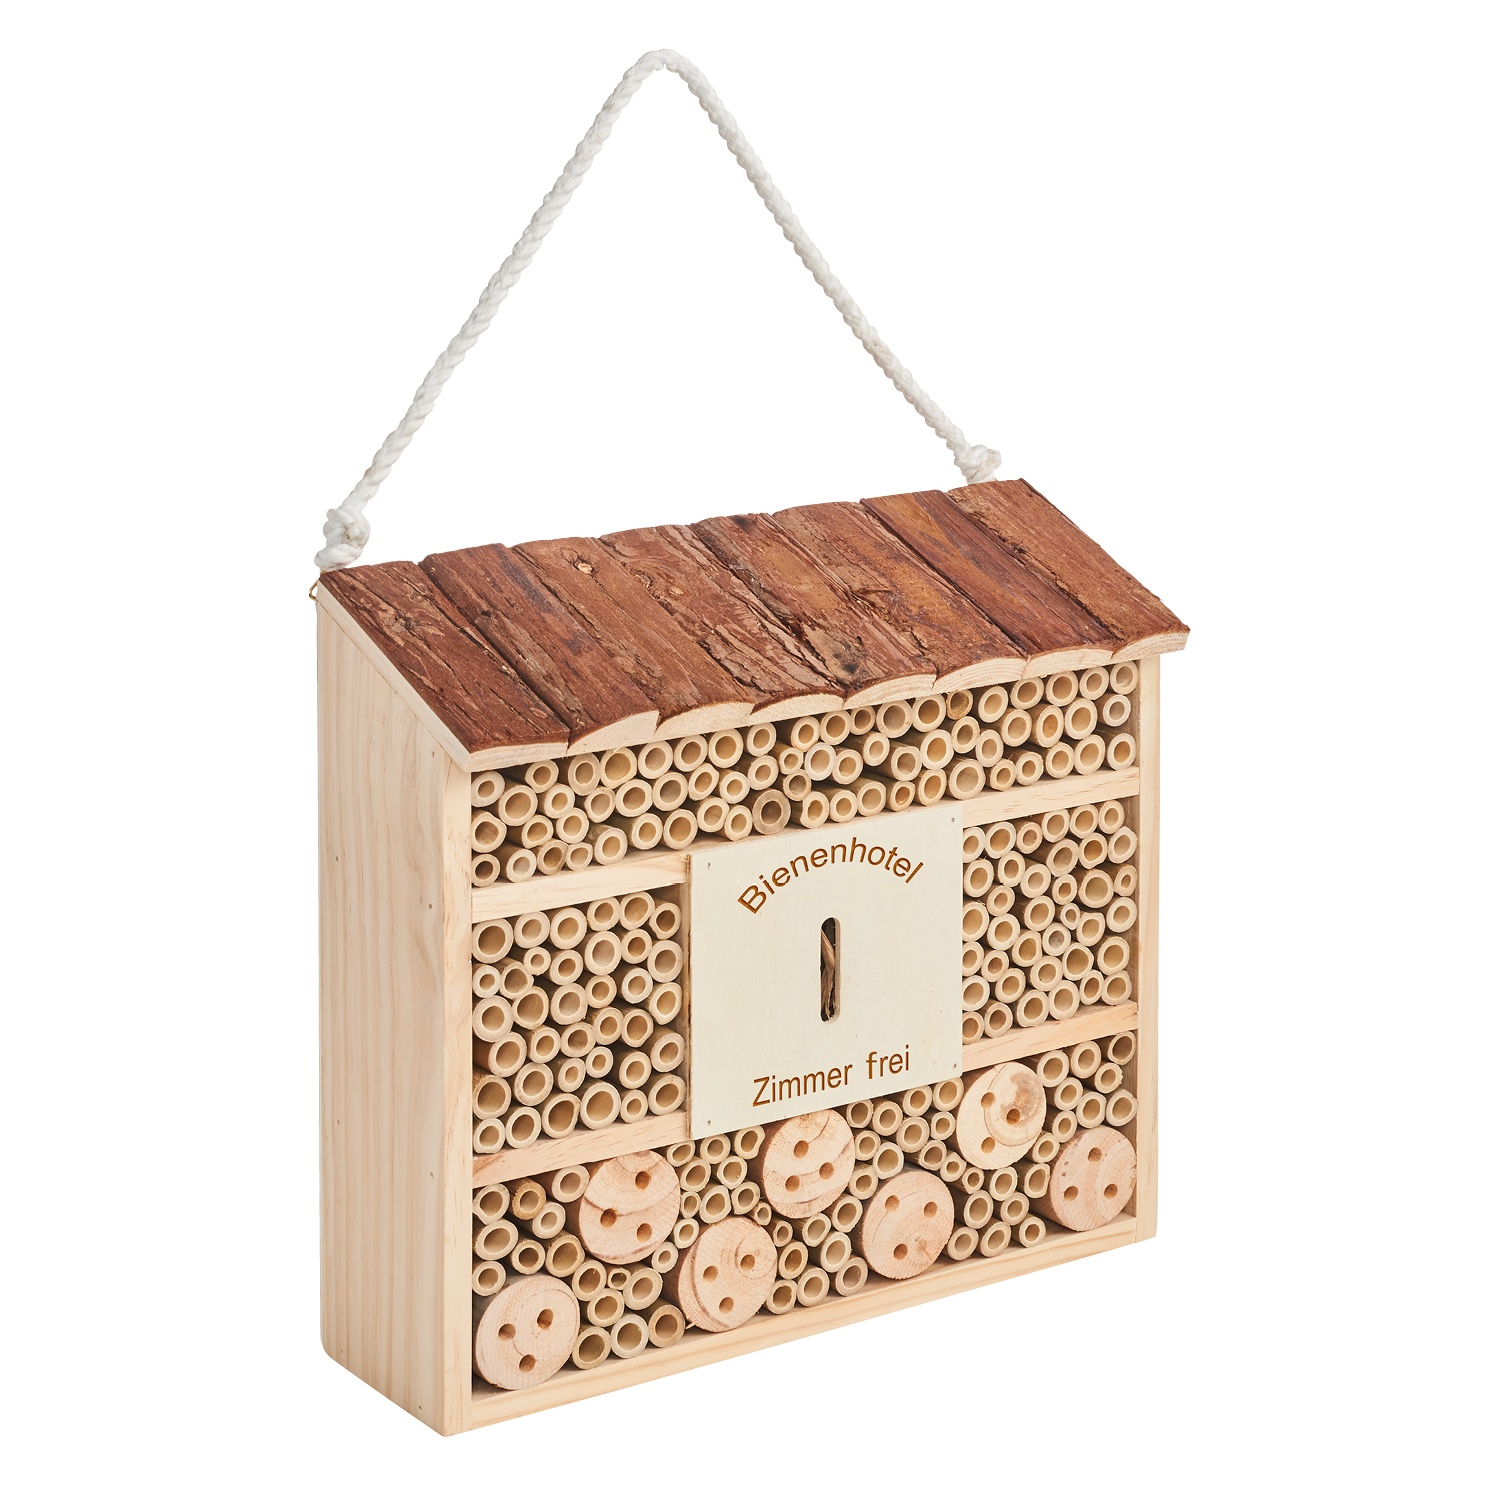 GARDENLINE® Bienen- und Insektenhotel aus Sperrholzplatten